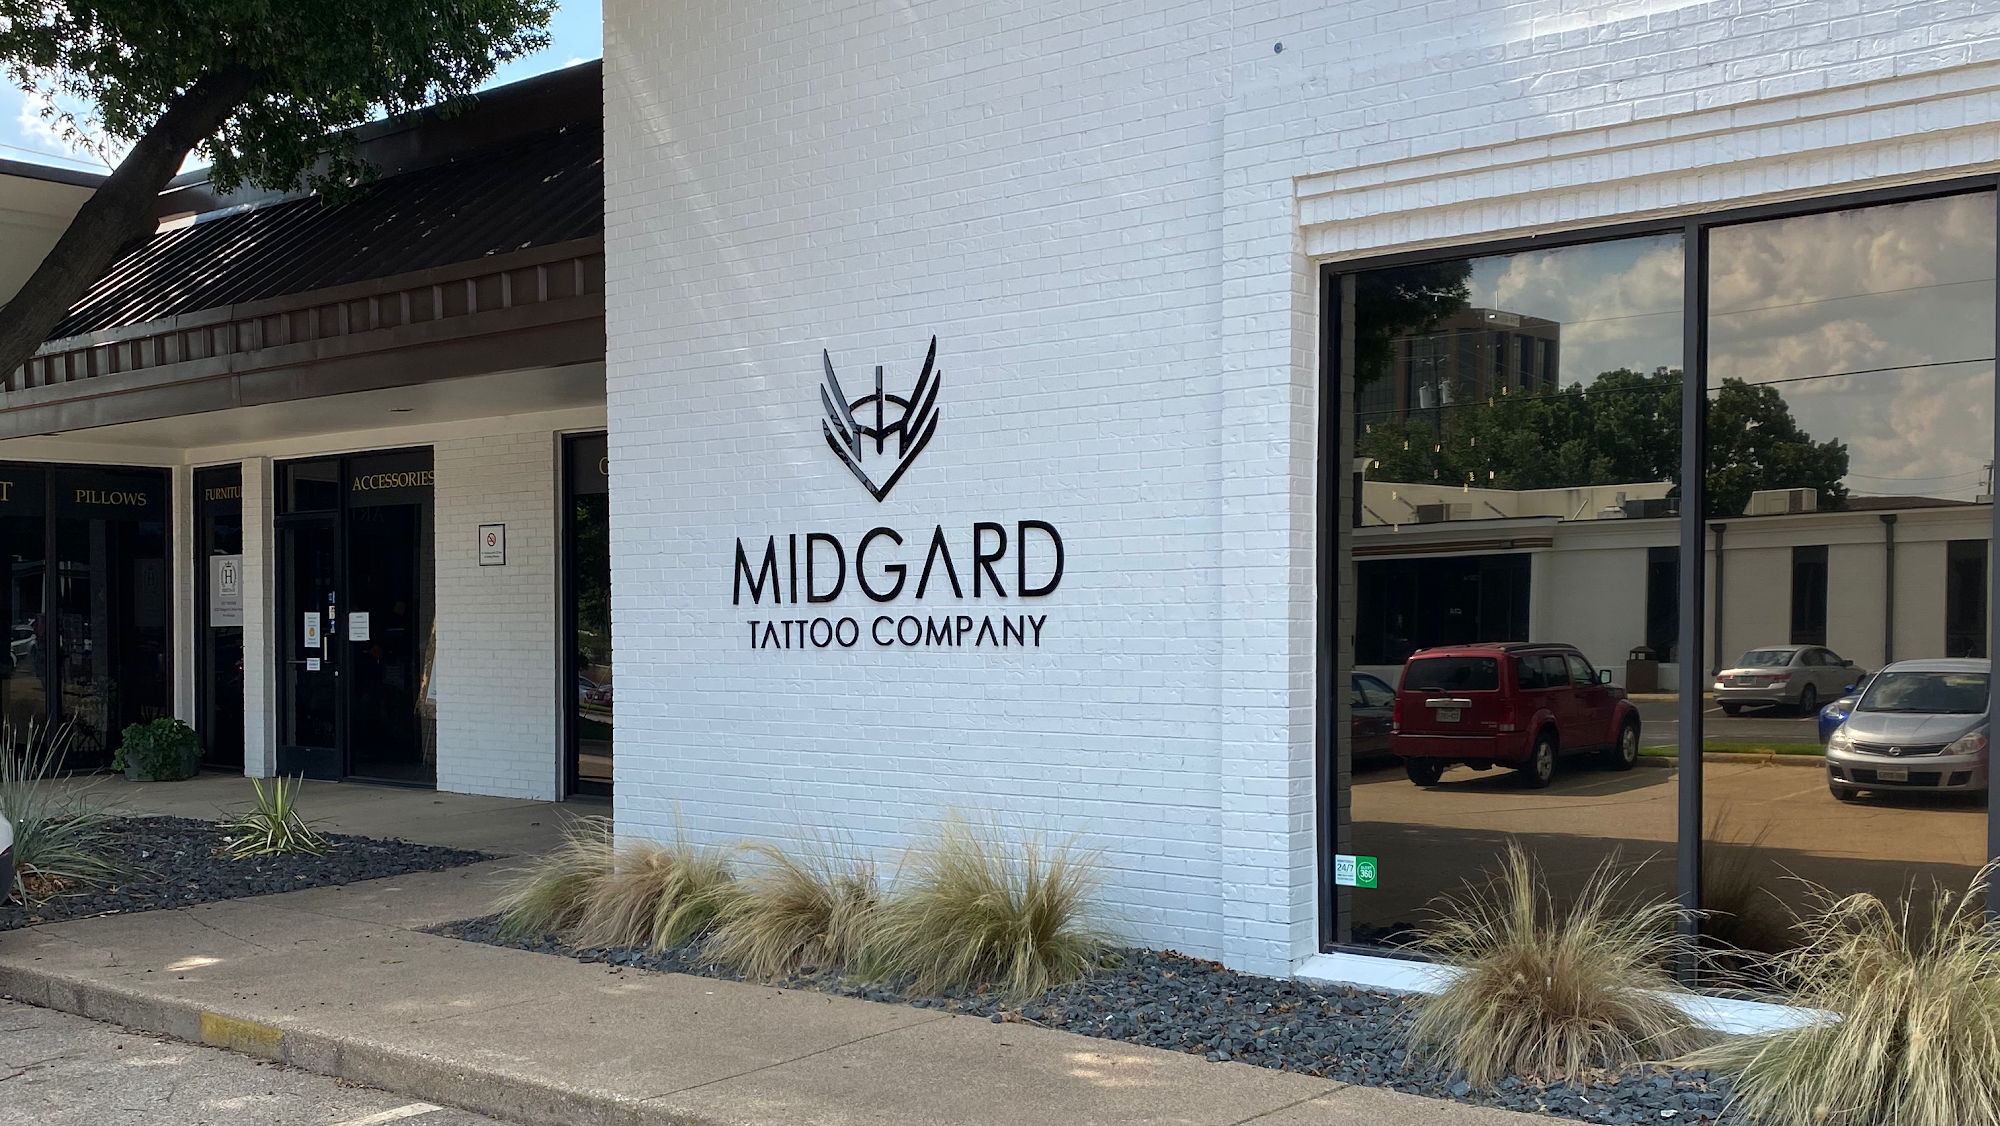 Midgard Tattoo Company